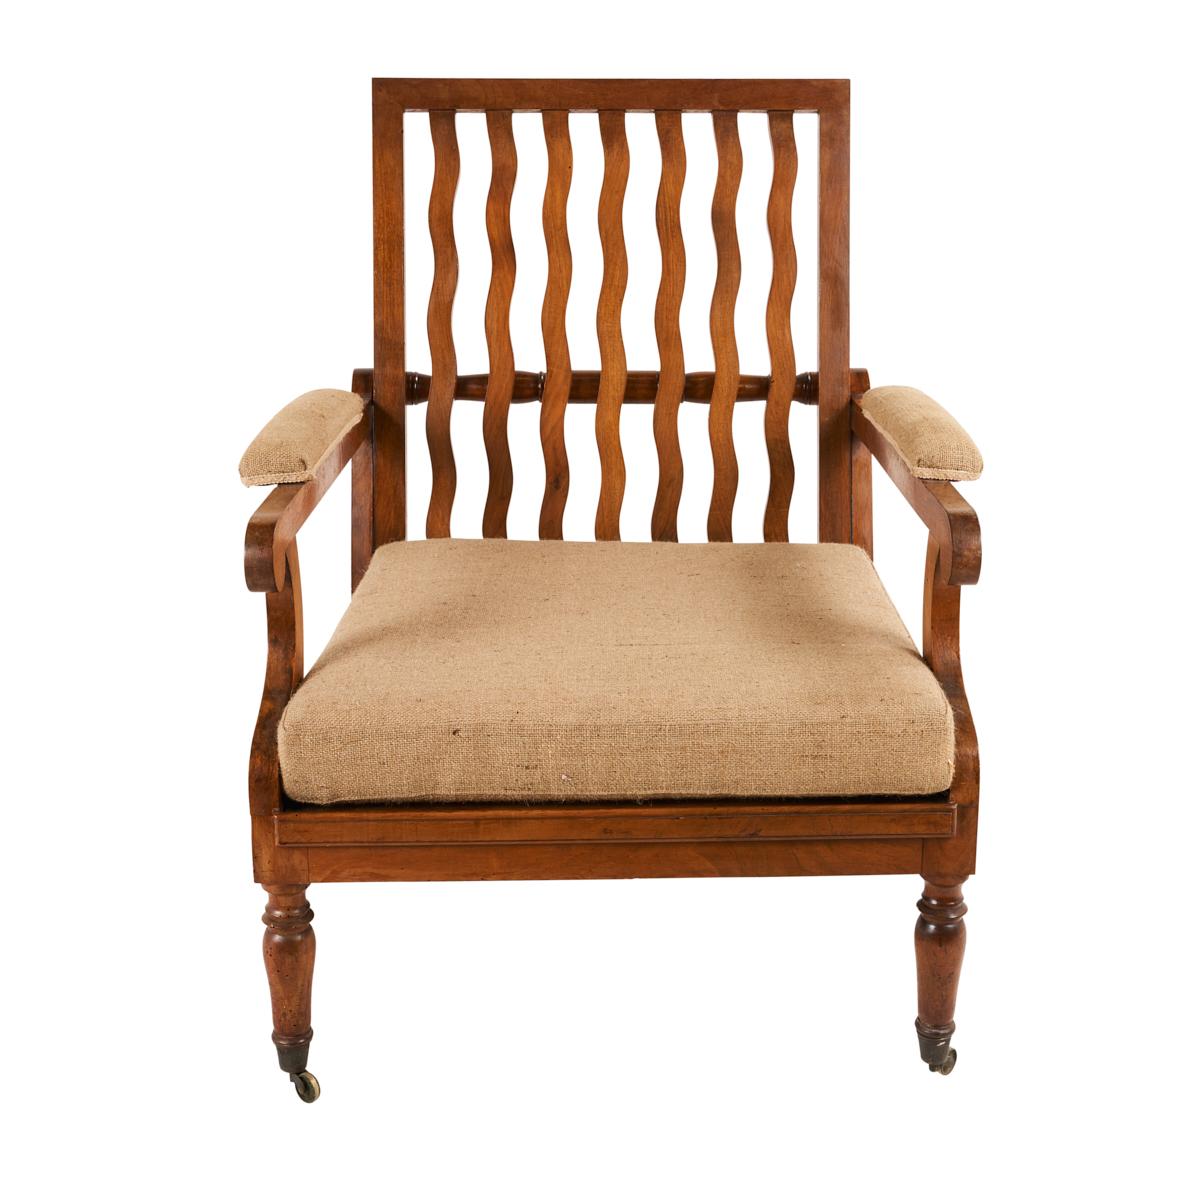 1820s furniture